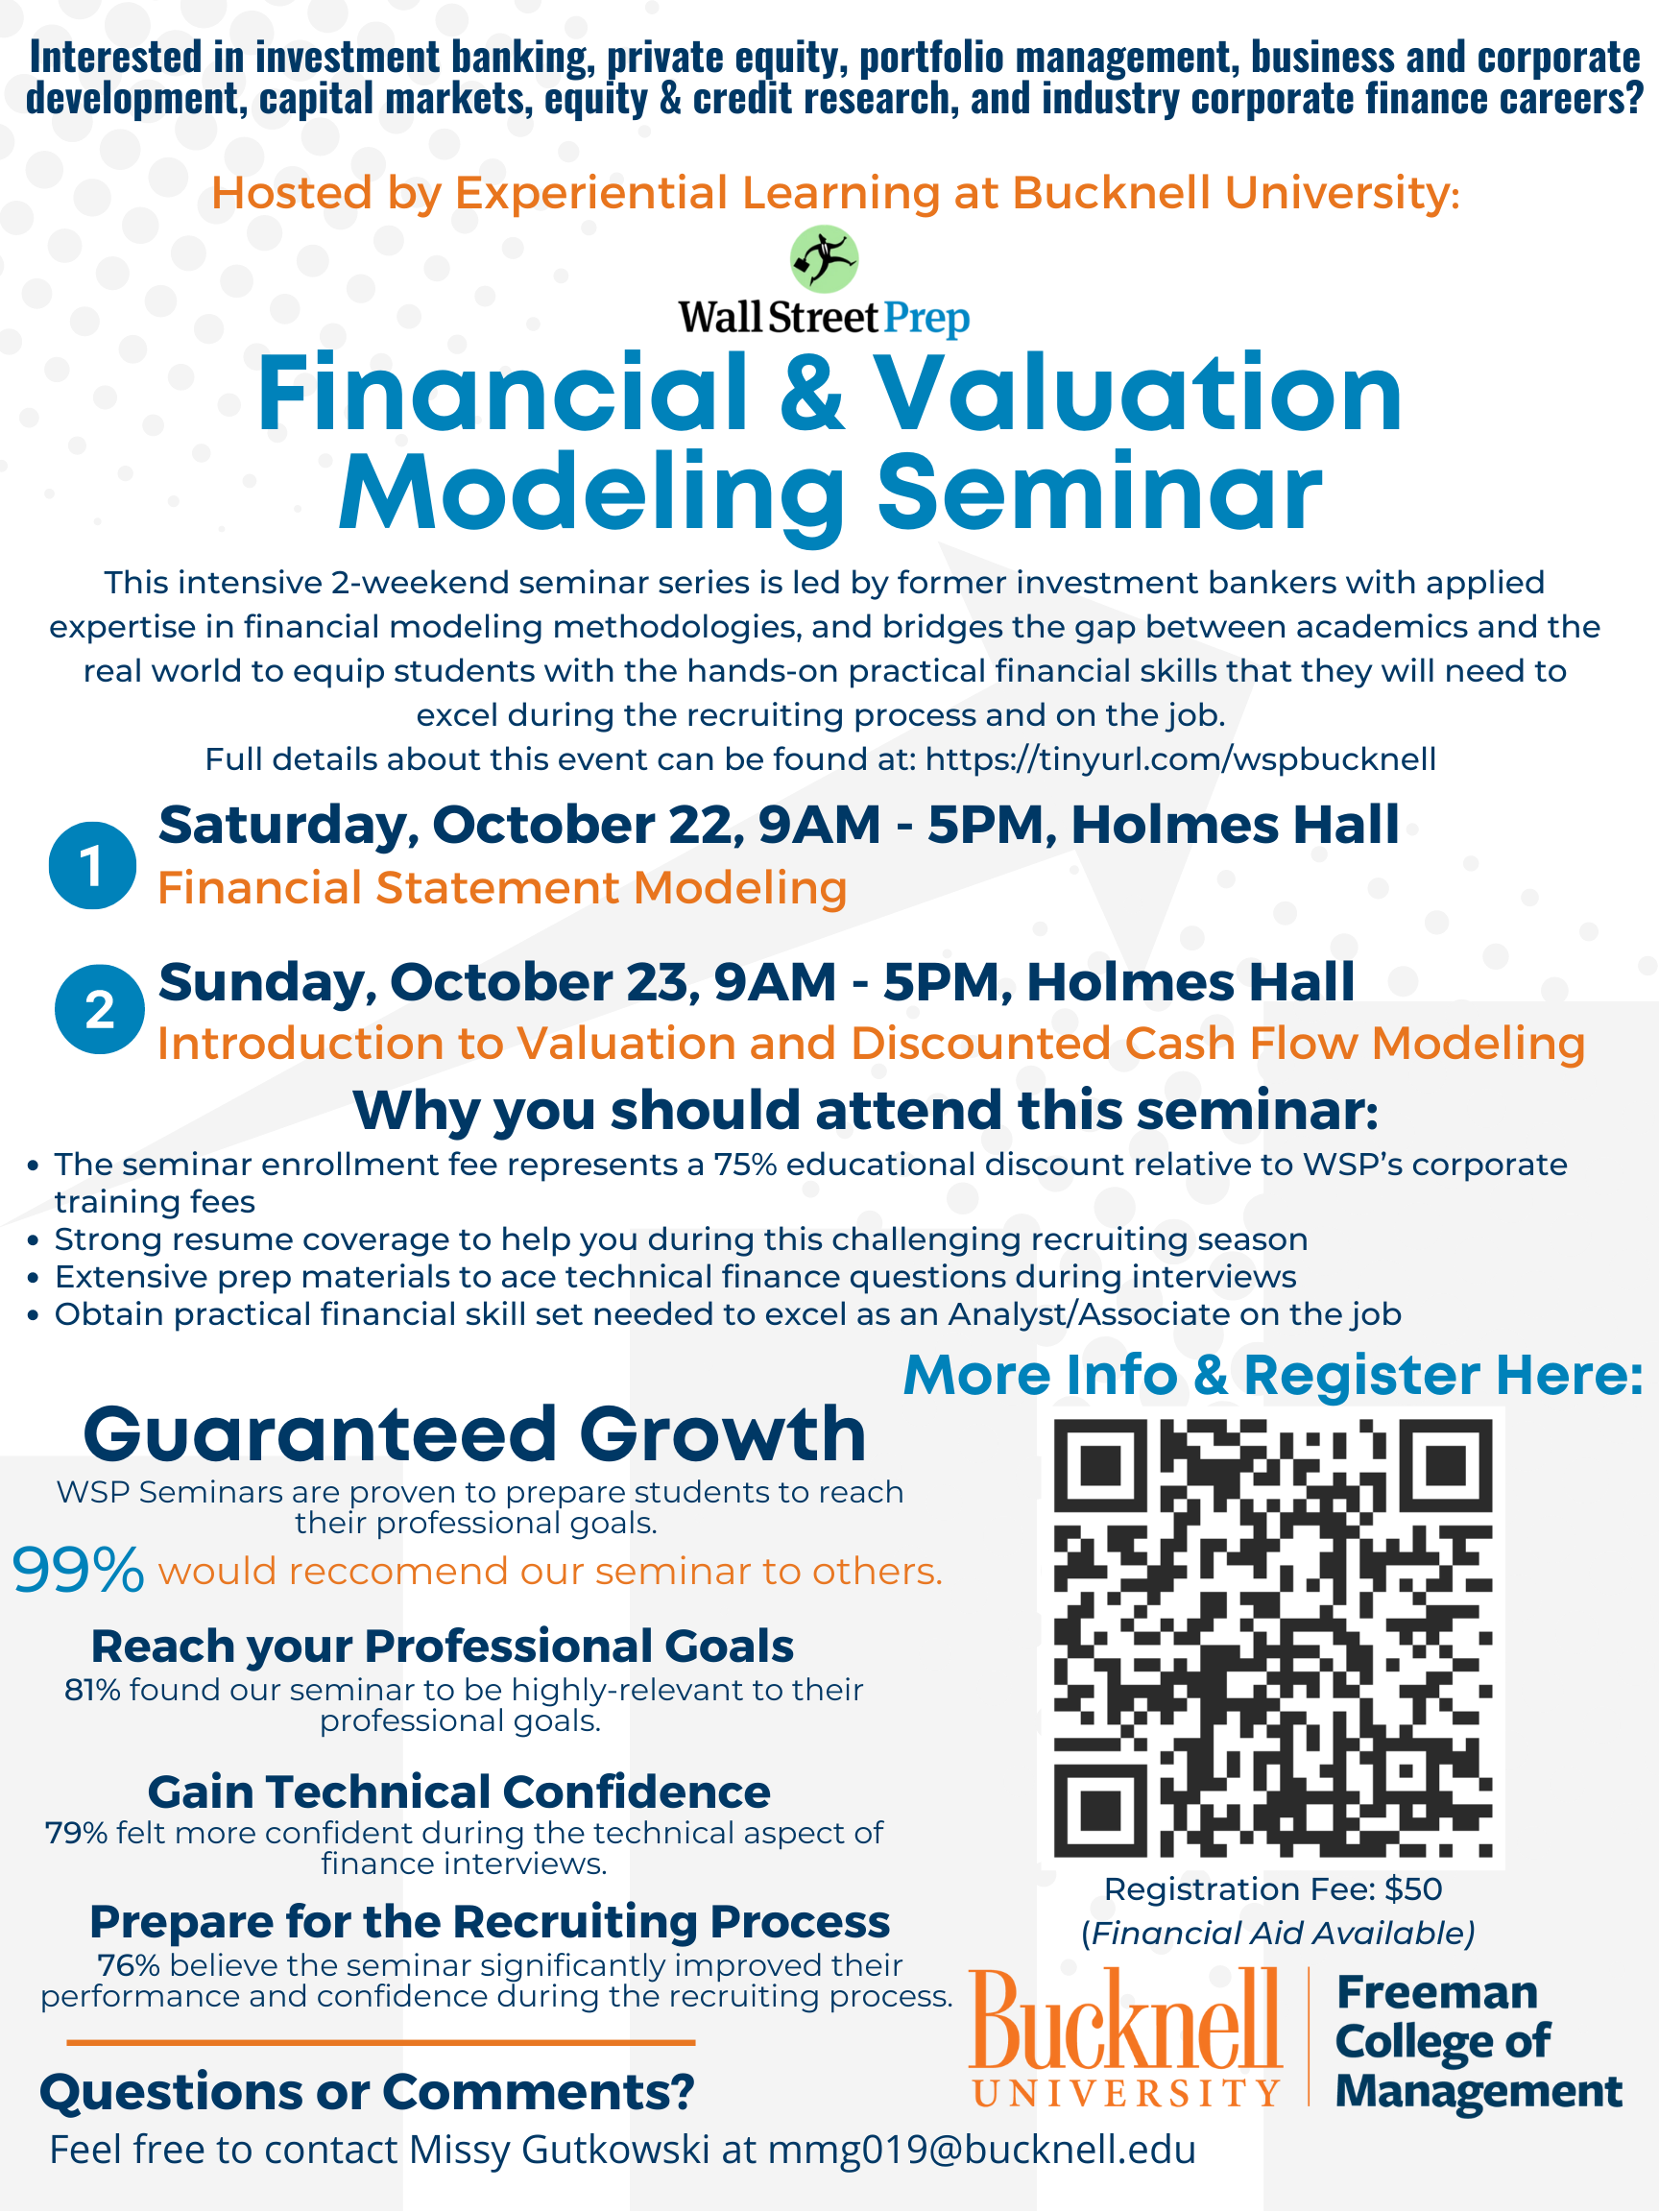 Wall Street Prep Financial & Valuation Modeling Seminar, October 22-23, 2022